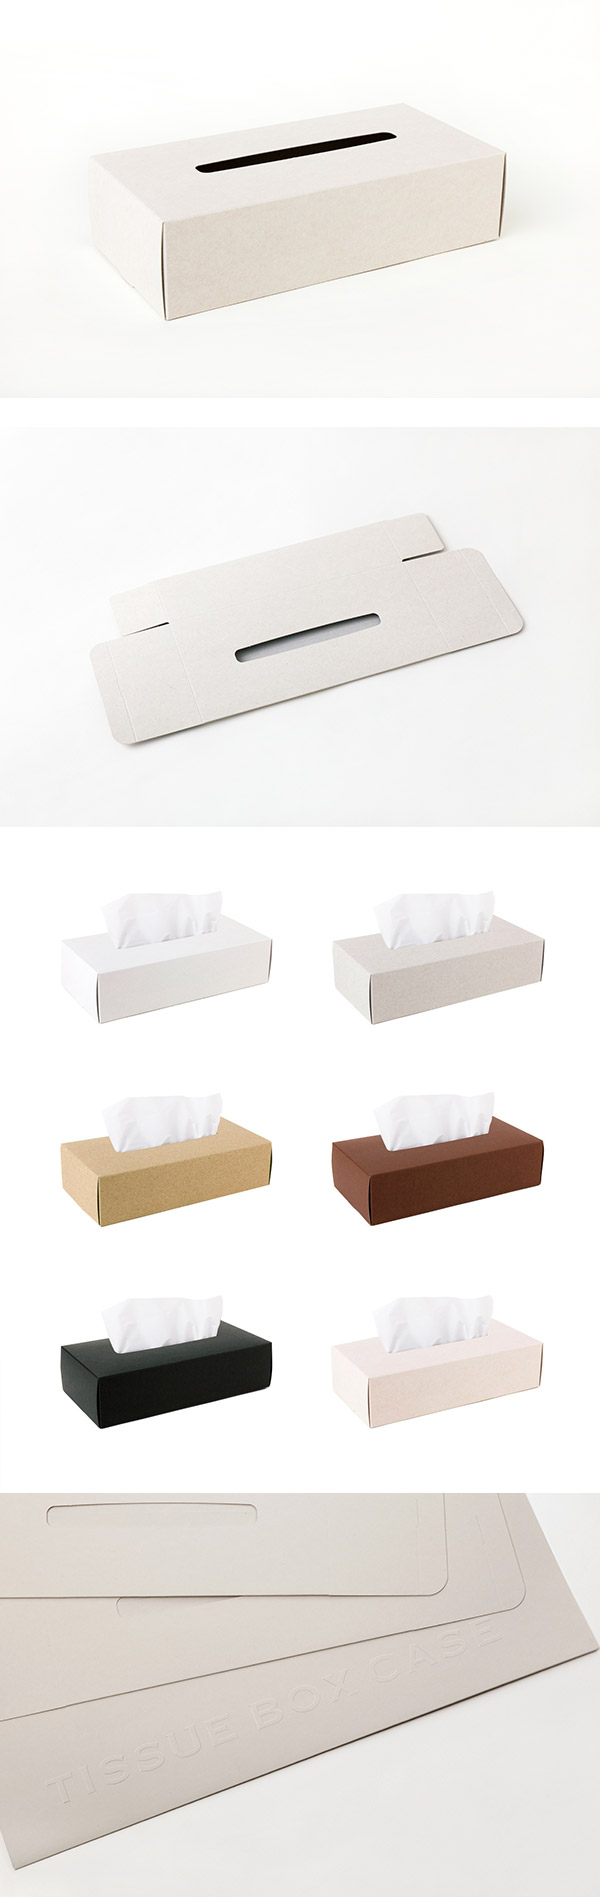 【4/23~4/29精選品牌9折優惠】Perrocaliente TISSUE BOX CASE 面紙盒 2入 米色